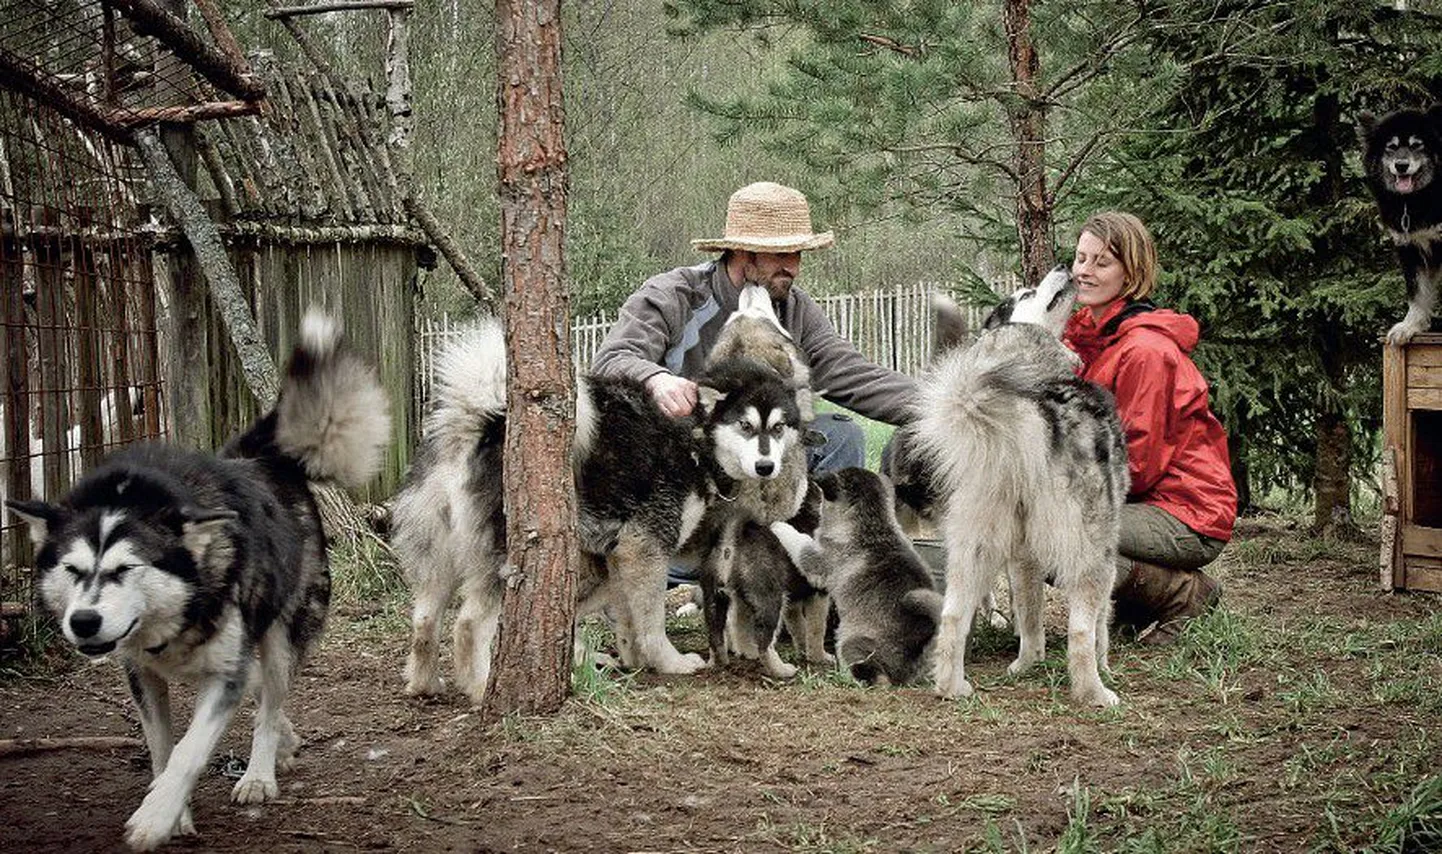 Стивен Литер и его спутница жизни Эстер Куатфасс со своими питомцами на хуторе Вахи в Южной Эстонии.